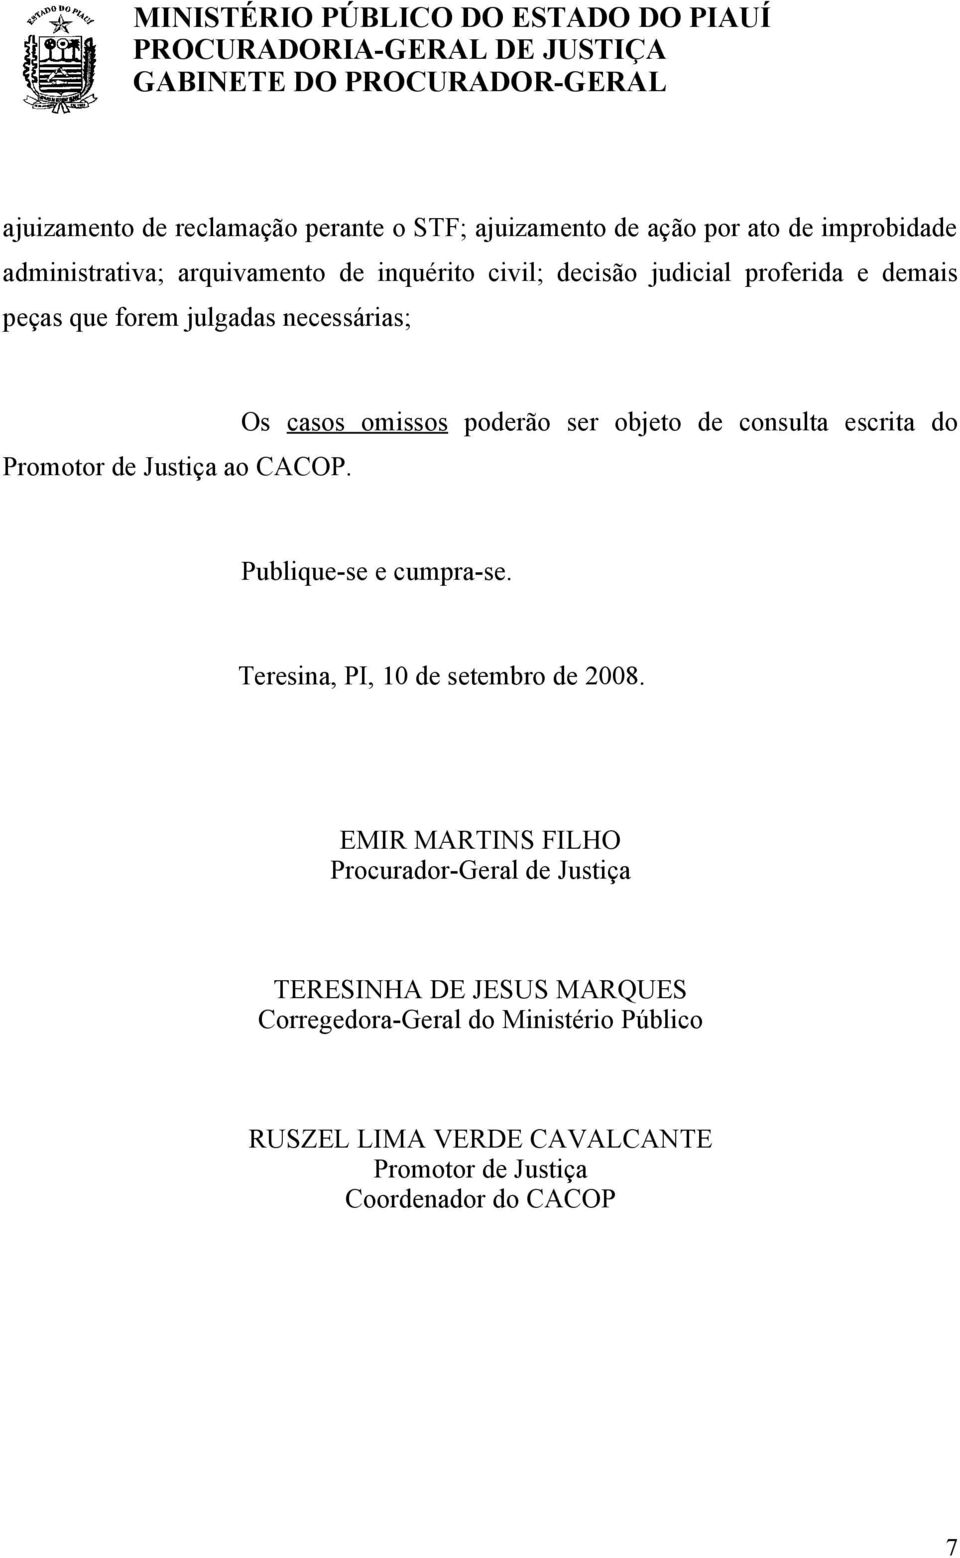 Os casos omissos poderão ser objeto de consulta escrita do Publique-se e cumpra-se. Teresina, PI, 10 de setembro de 2008.